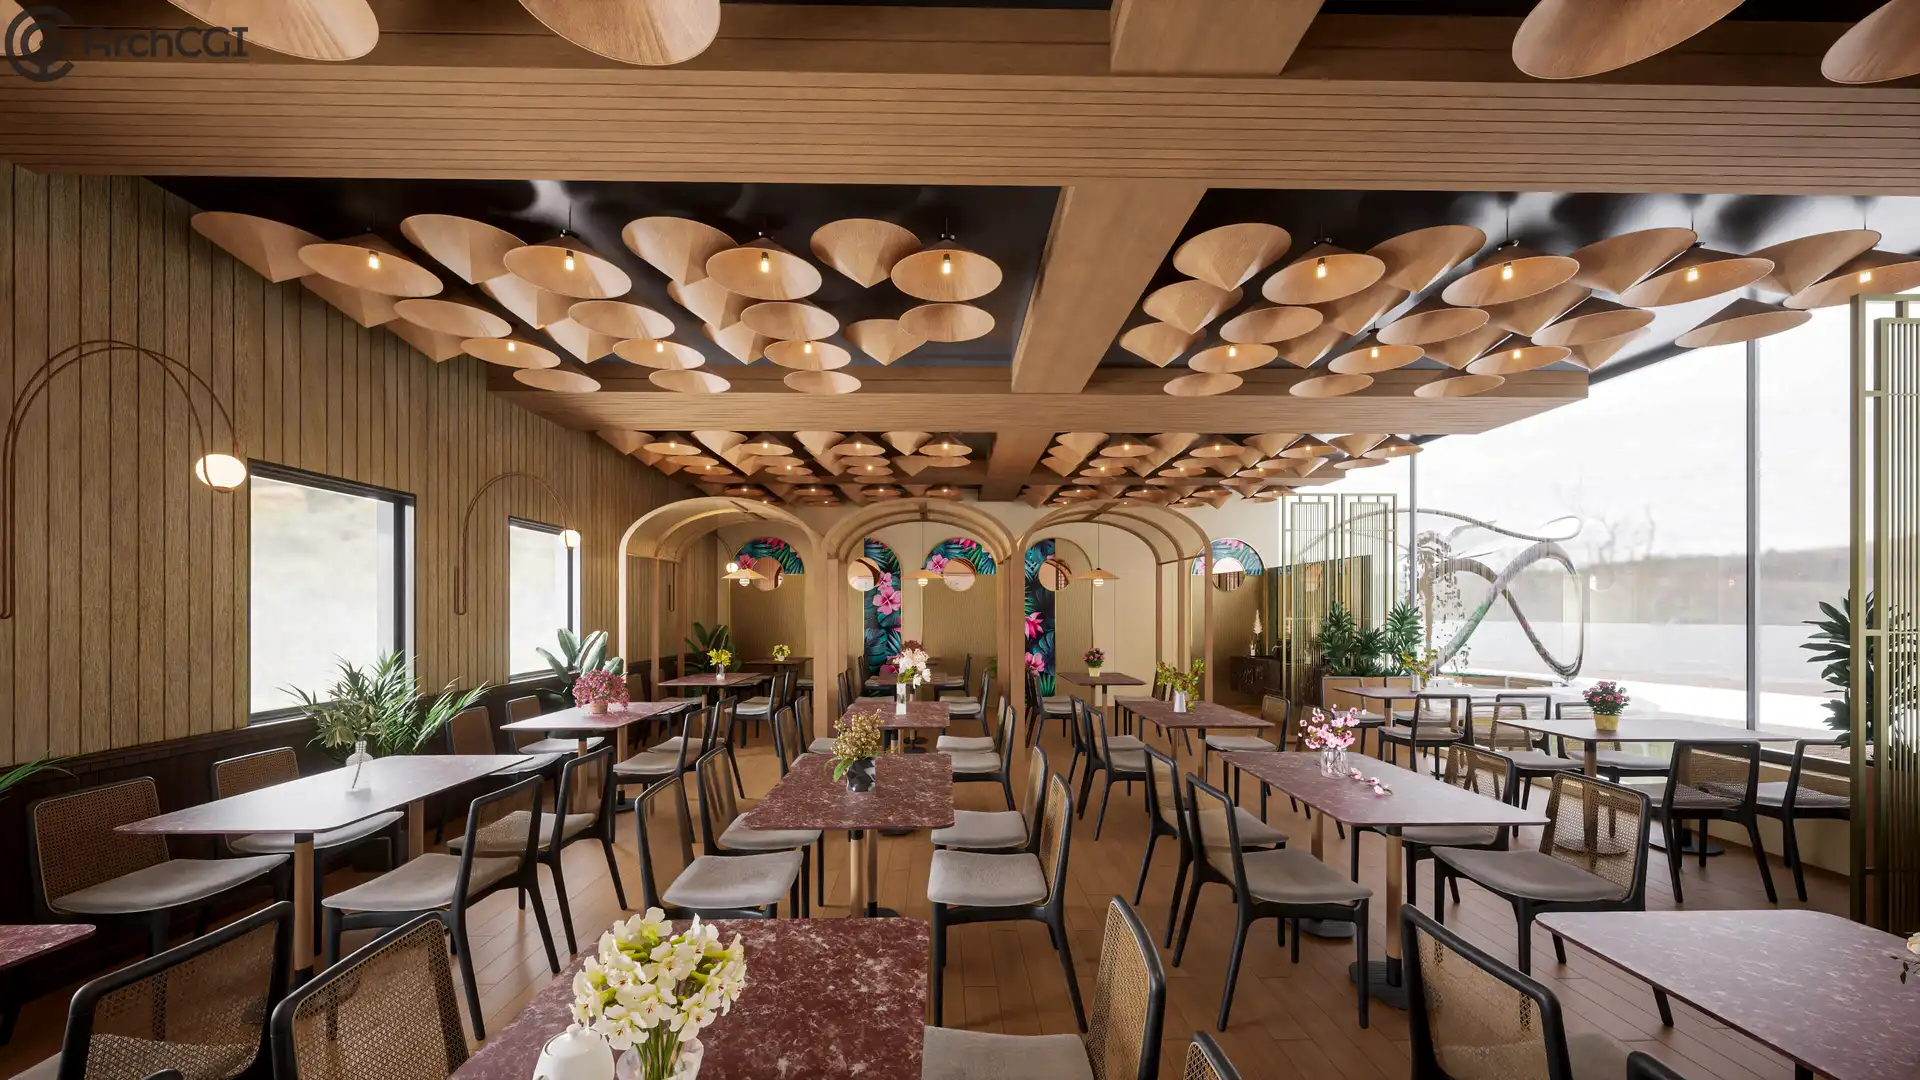 Our Elegant Restaurant Interior Design | Large Dining Space | ArchCGI